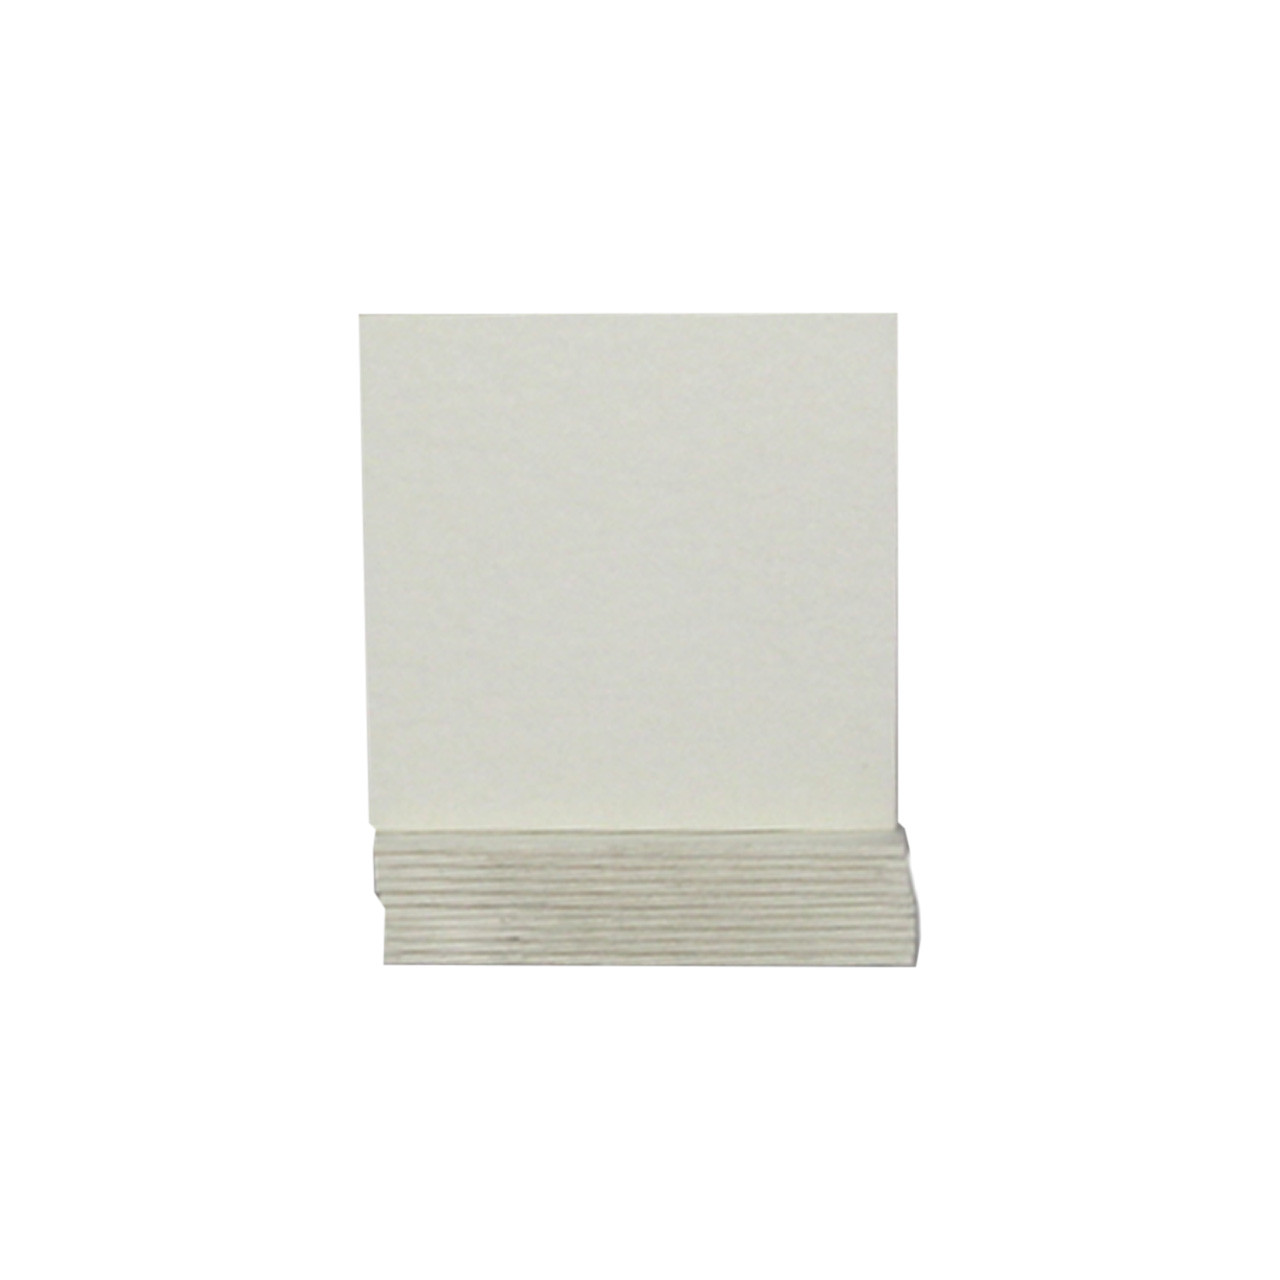 Non-Asbestos Square 3" Platinum Paper Bases (Pkg. of 20)